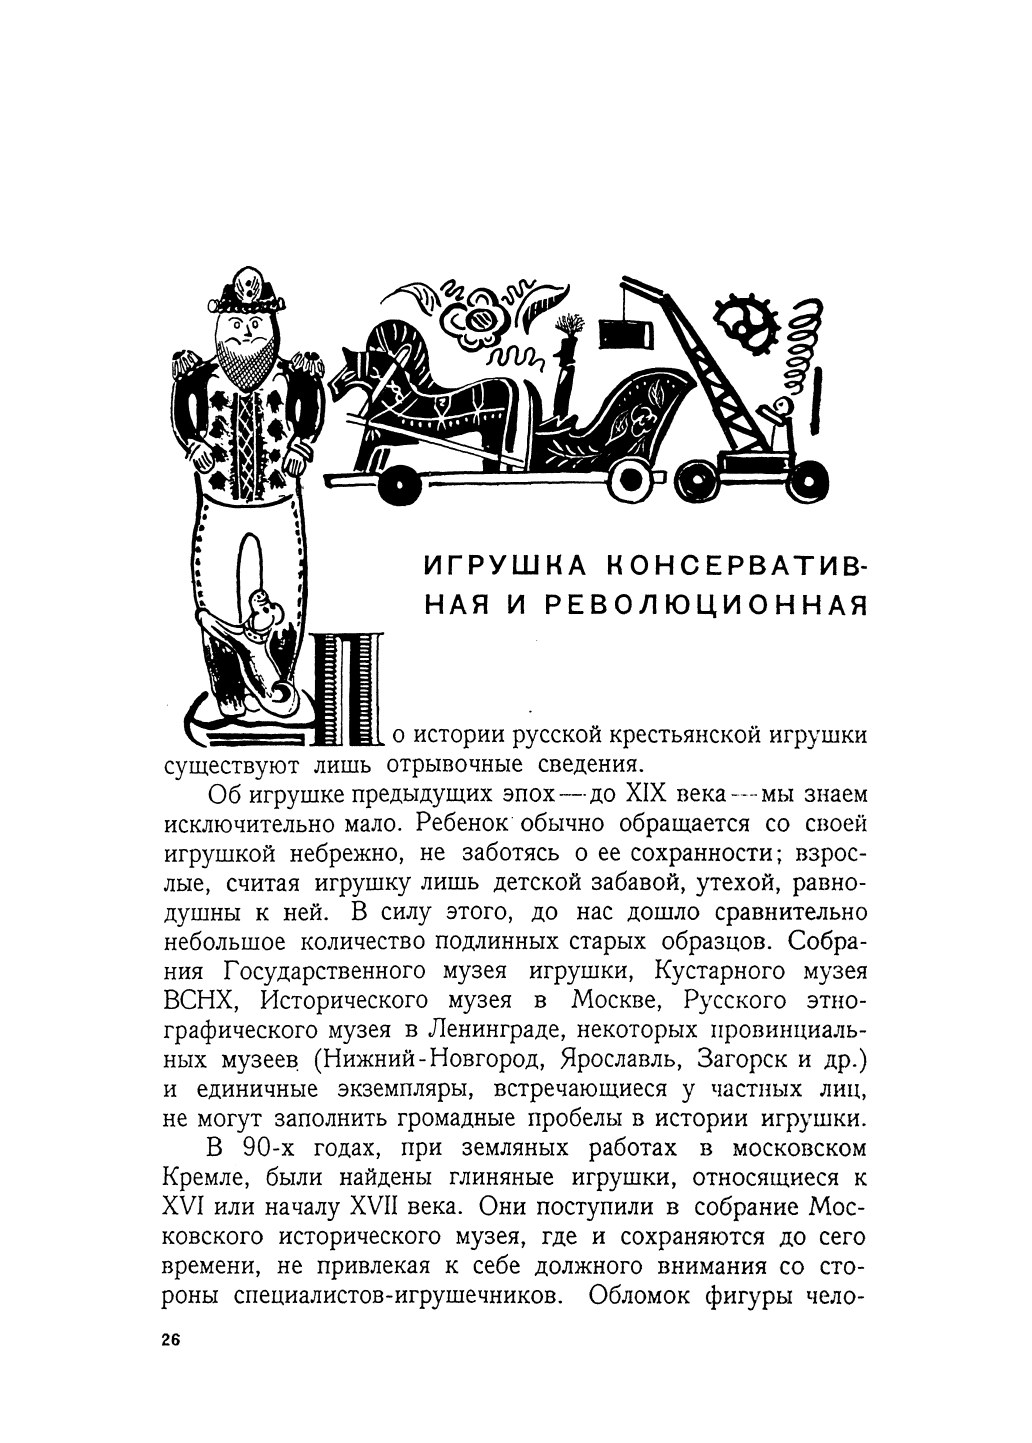 Русская крестьянская игрушка / Н. Церетелли. — [Москва] : Academia, 1933